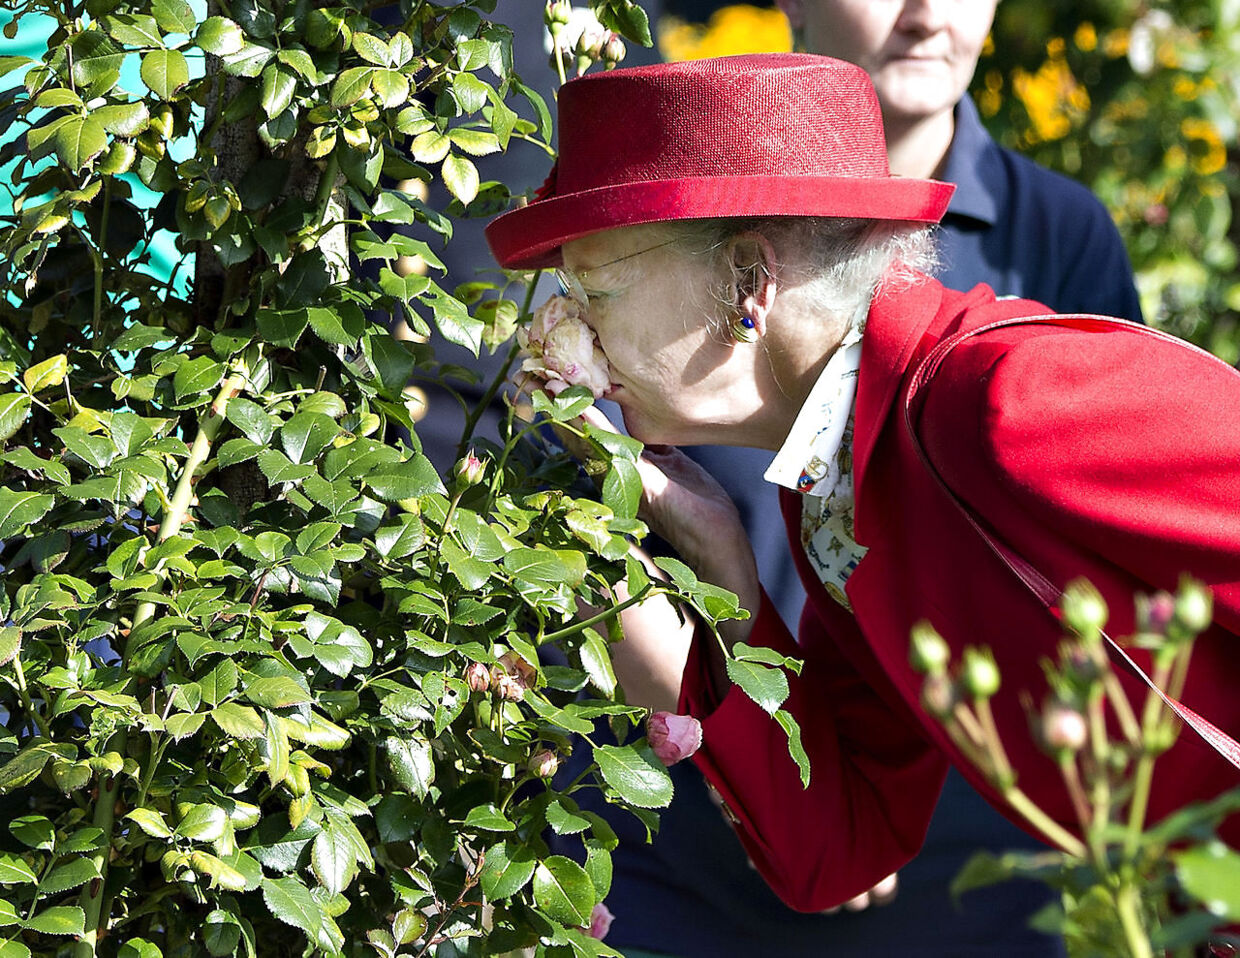 Dronning Margrethe i nærkontakt med en rose i Den Jydske Rosenpark i Aalestrup, som hun besøgte under regentparrets sommertogt i september 2014.